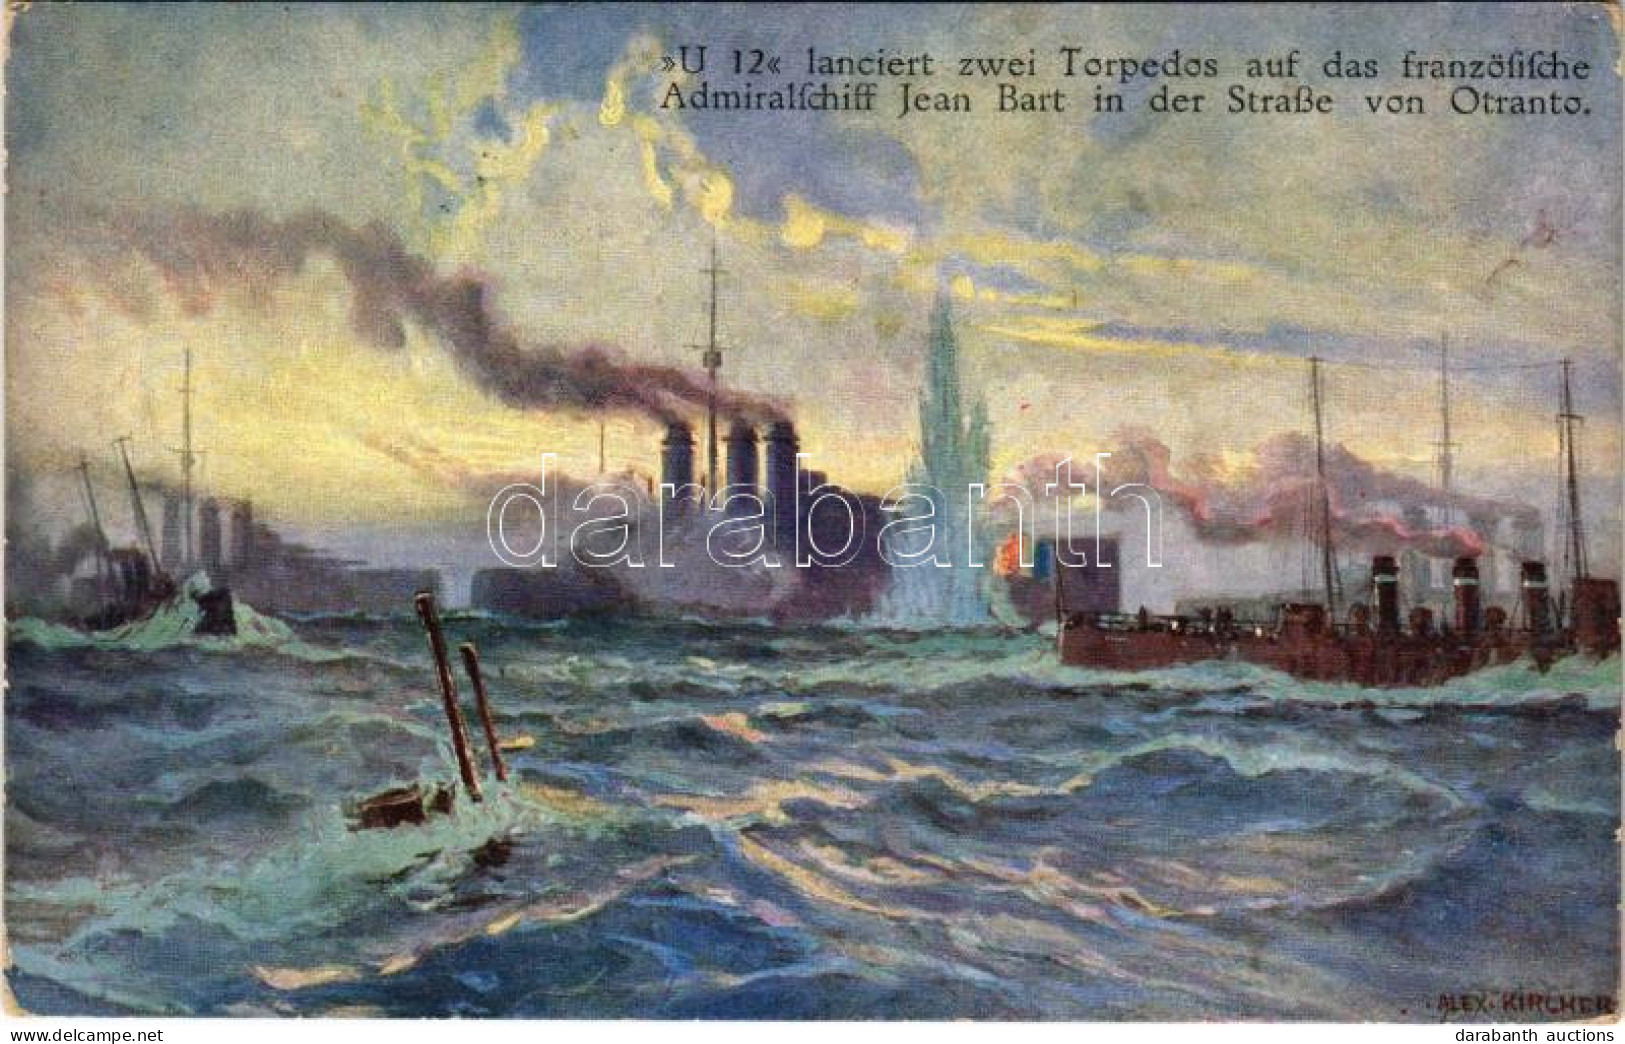 T2/T3 1915 U 12 Lanciert Zwei Torpedos Auf Das Französische Admiralschiff Jean Bart In Der Strasse Von Otranto. Offiziel - Sin Clasificación